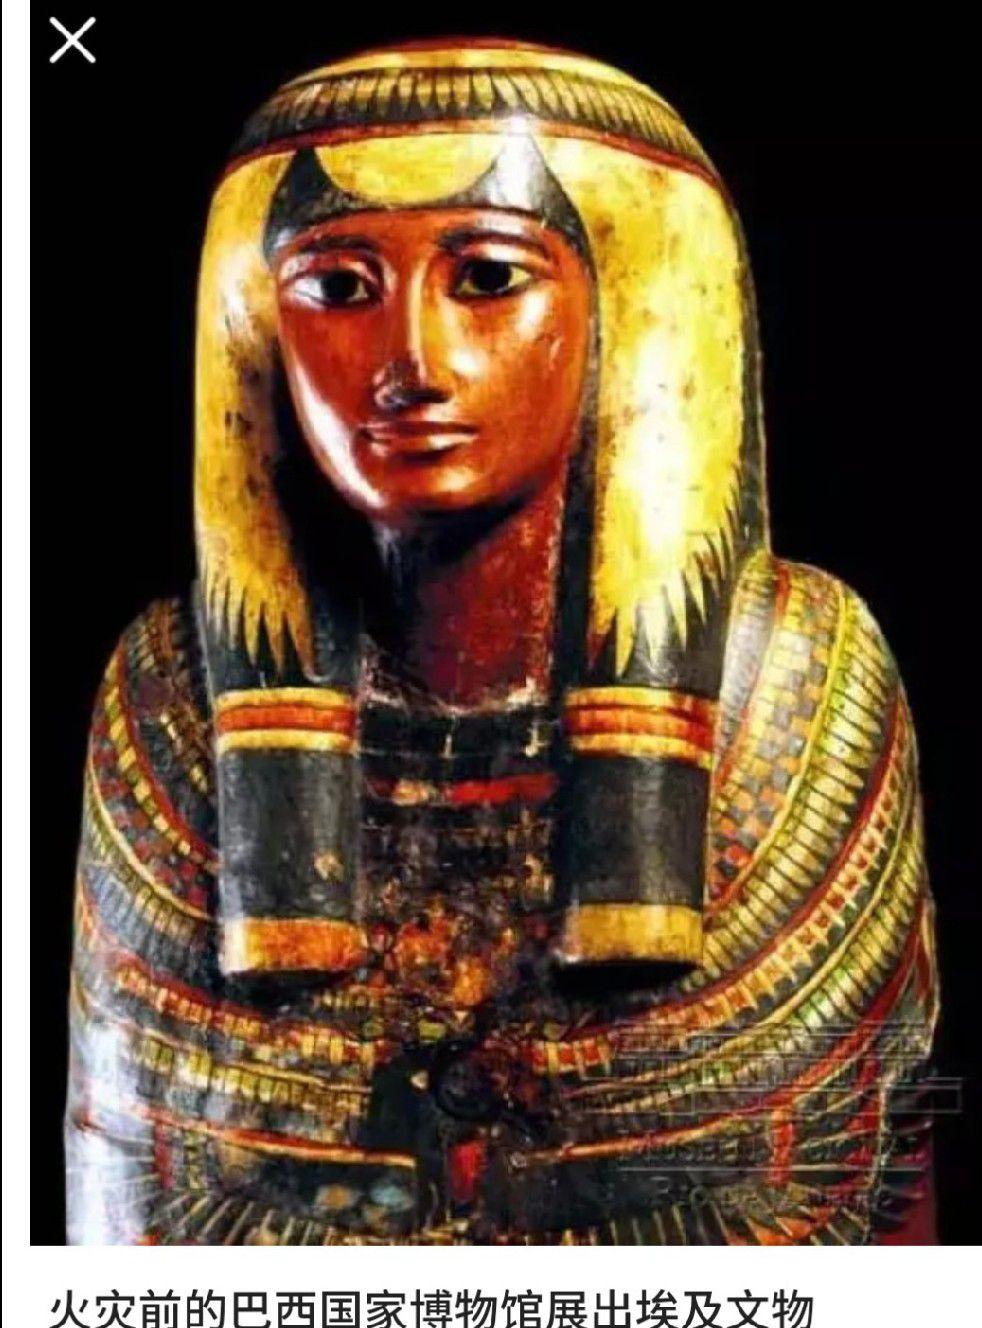 古埃及人是黄种人吗? 